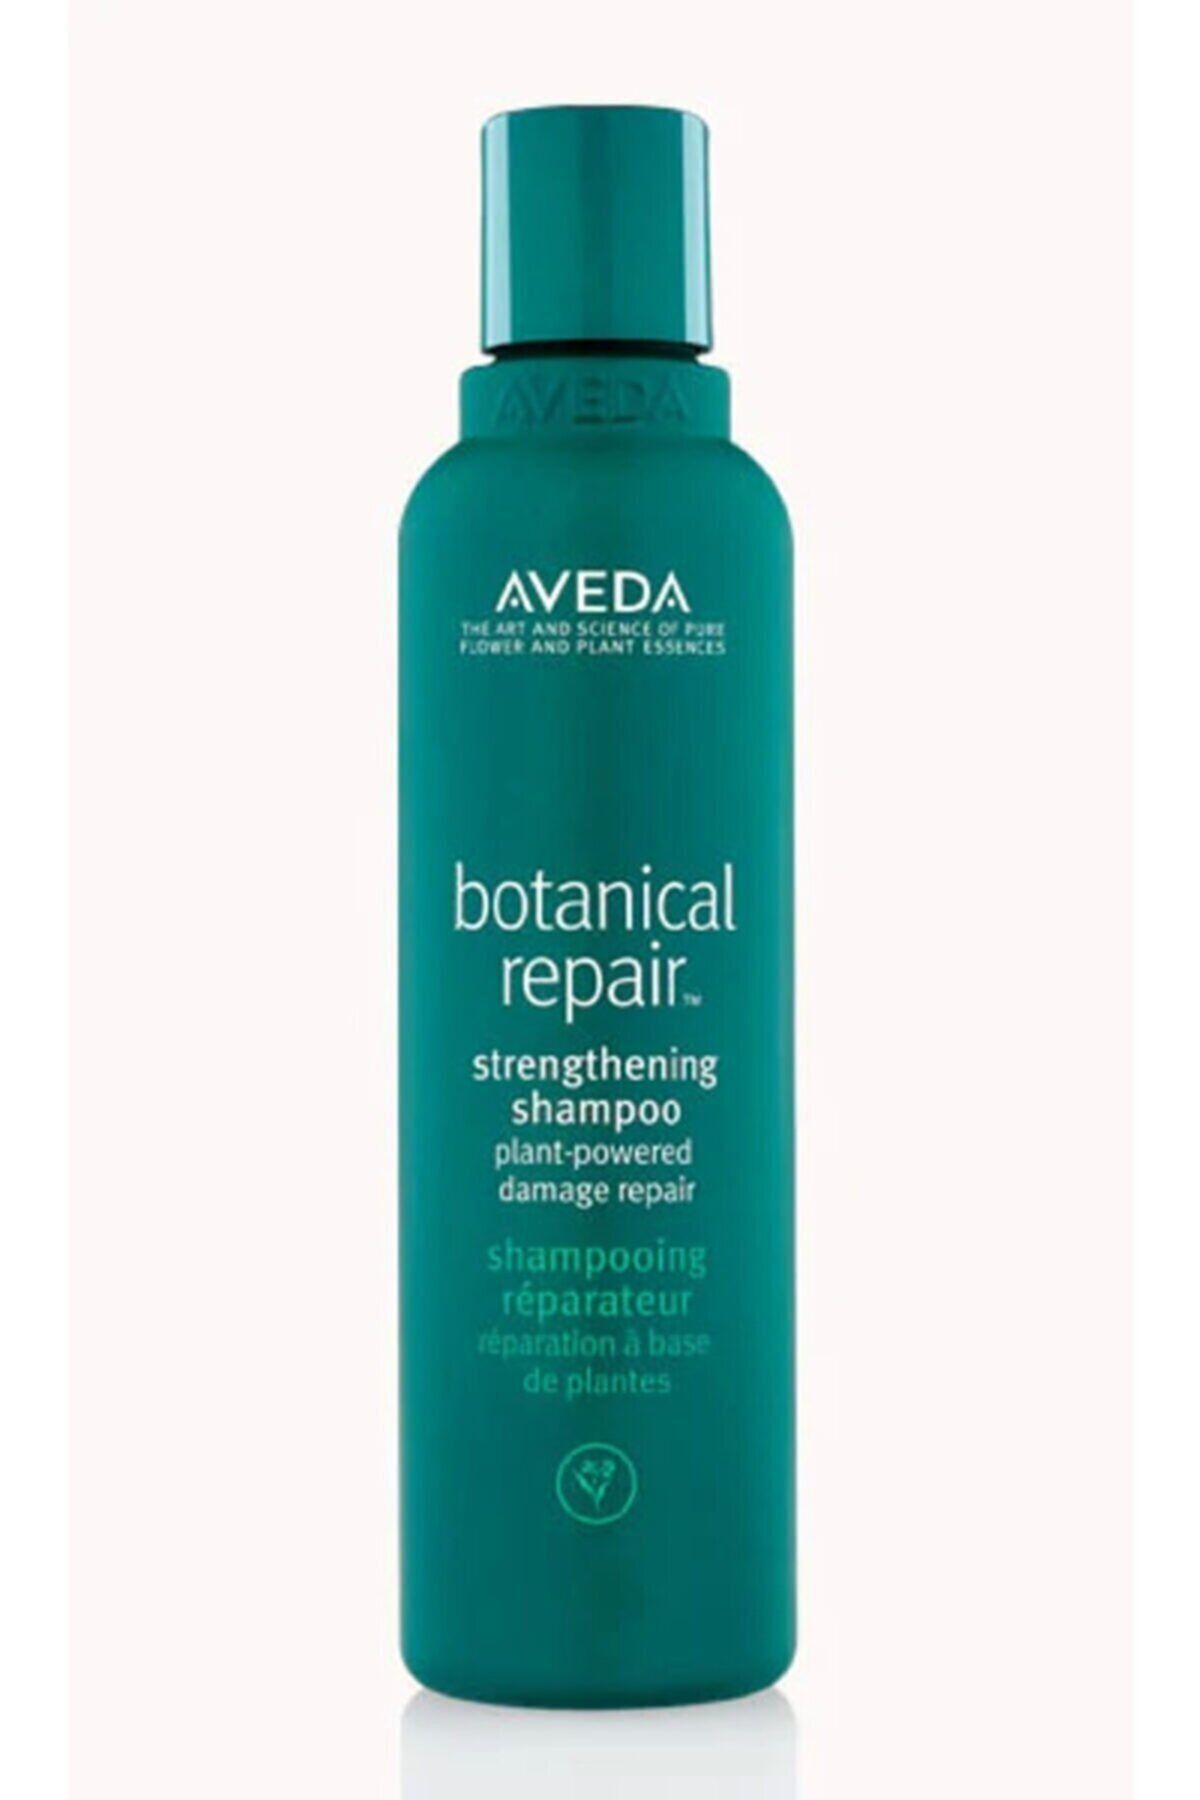 Aveda Botanical Repair Yıpranmış Saçlar Için Onarım Şampuanı 200ml 18084019481